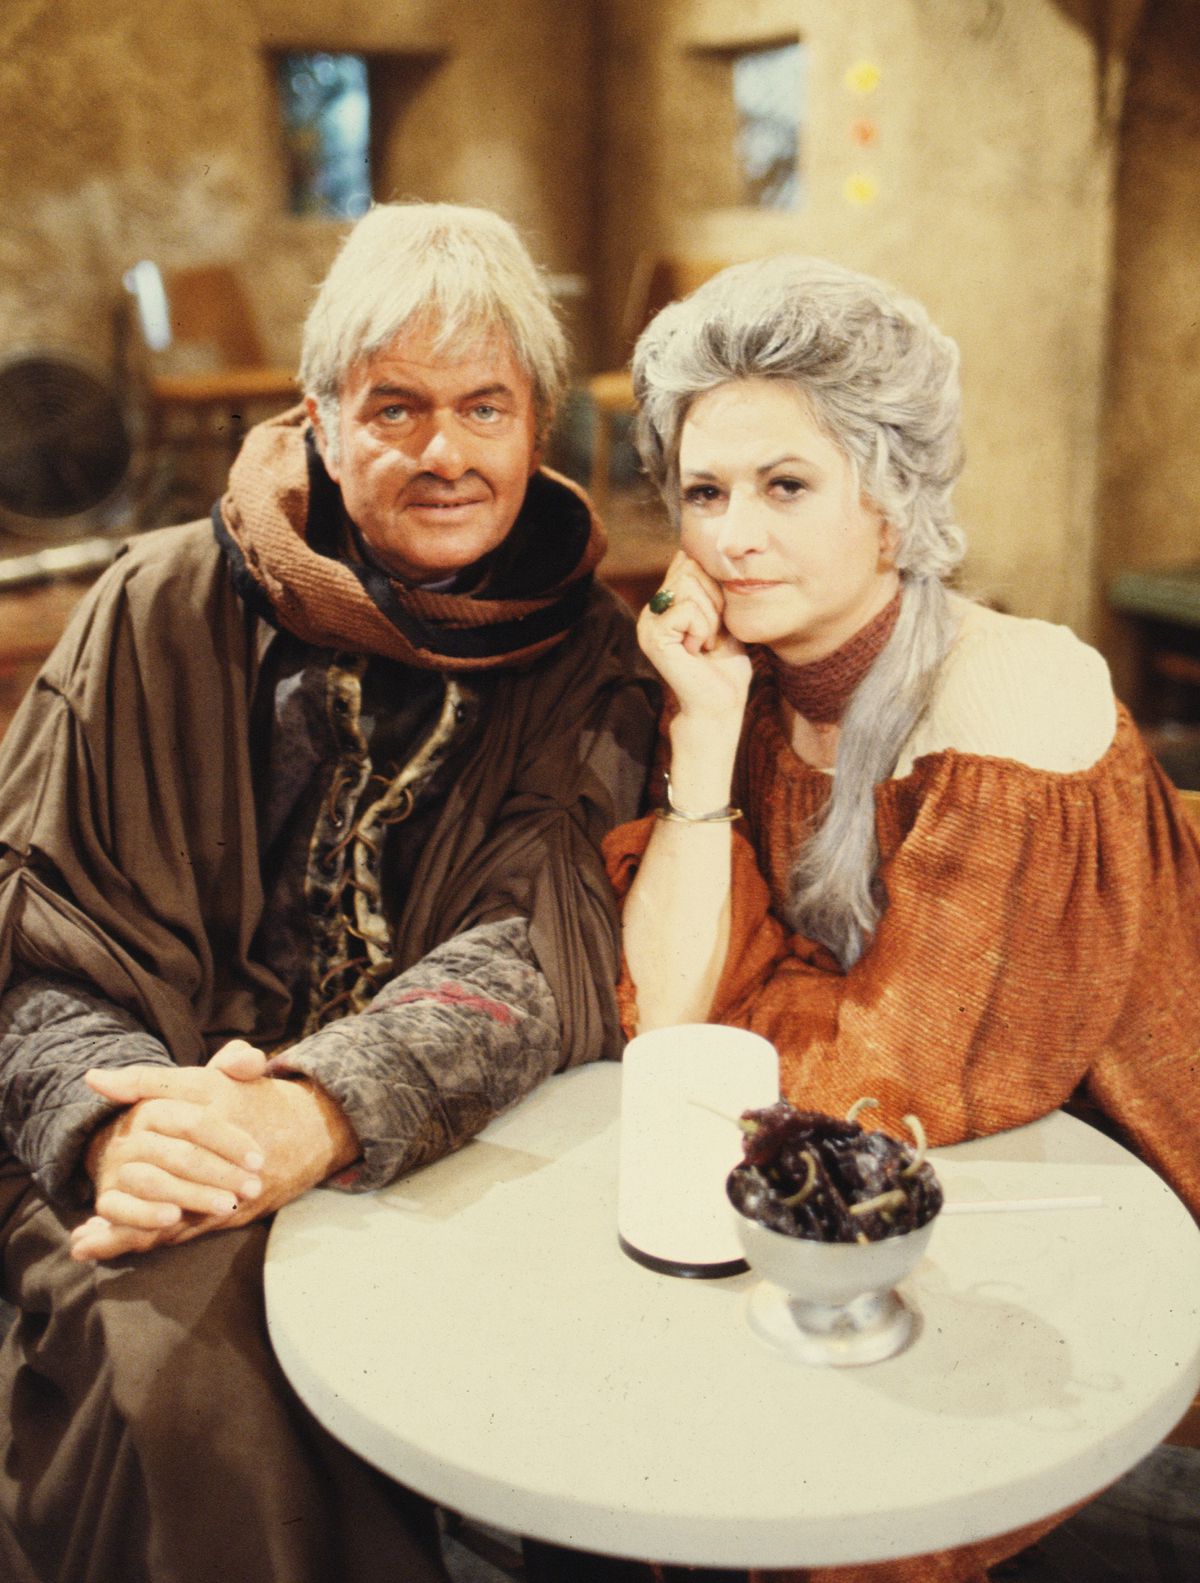 在 1978 年《星球大战》假日特辑的宣传照中，阿特·卡尼 (Art Carney) 和碧亚瑟 (Bea Arthur) 穿着星球大战服装坐在一起，看着镜头